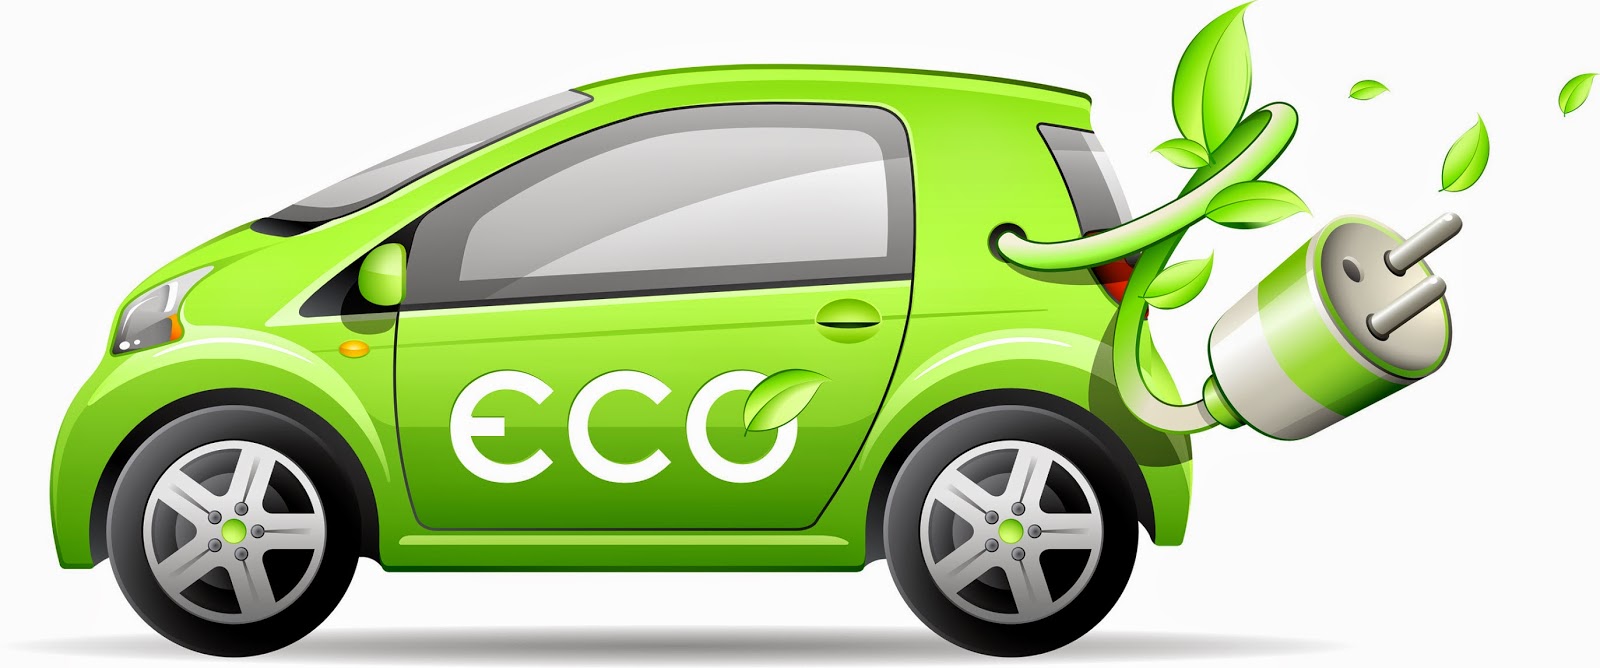 novedades-de-la-industria-de-la-automocion-nuevos-coches-electricos